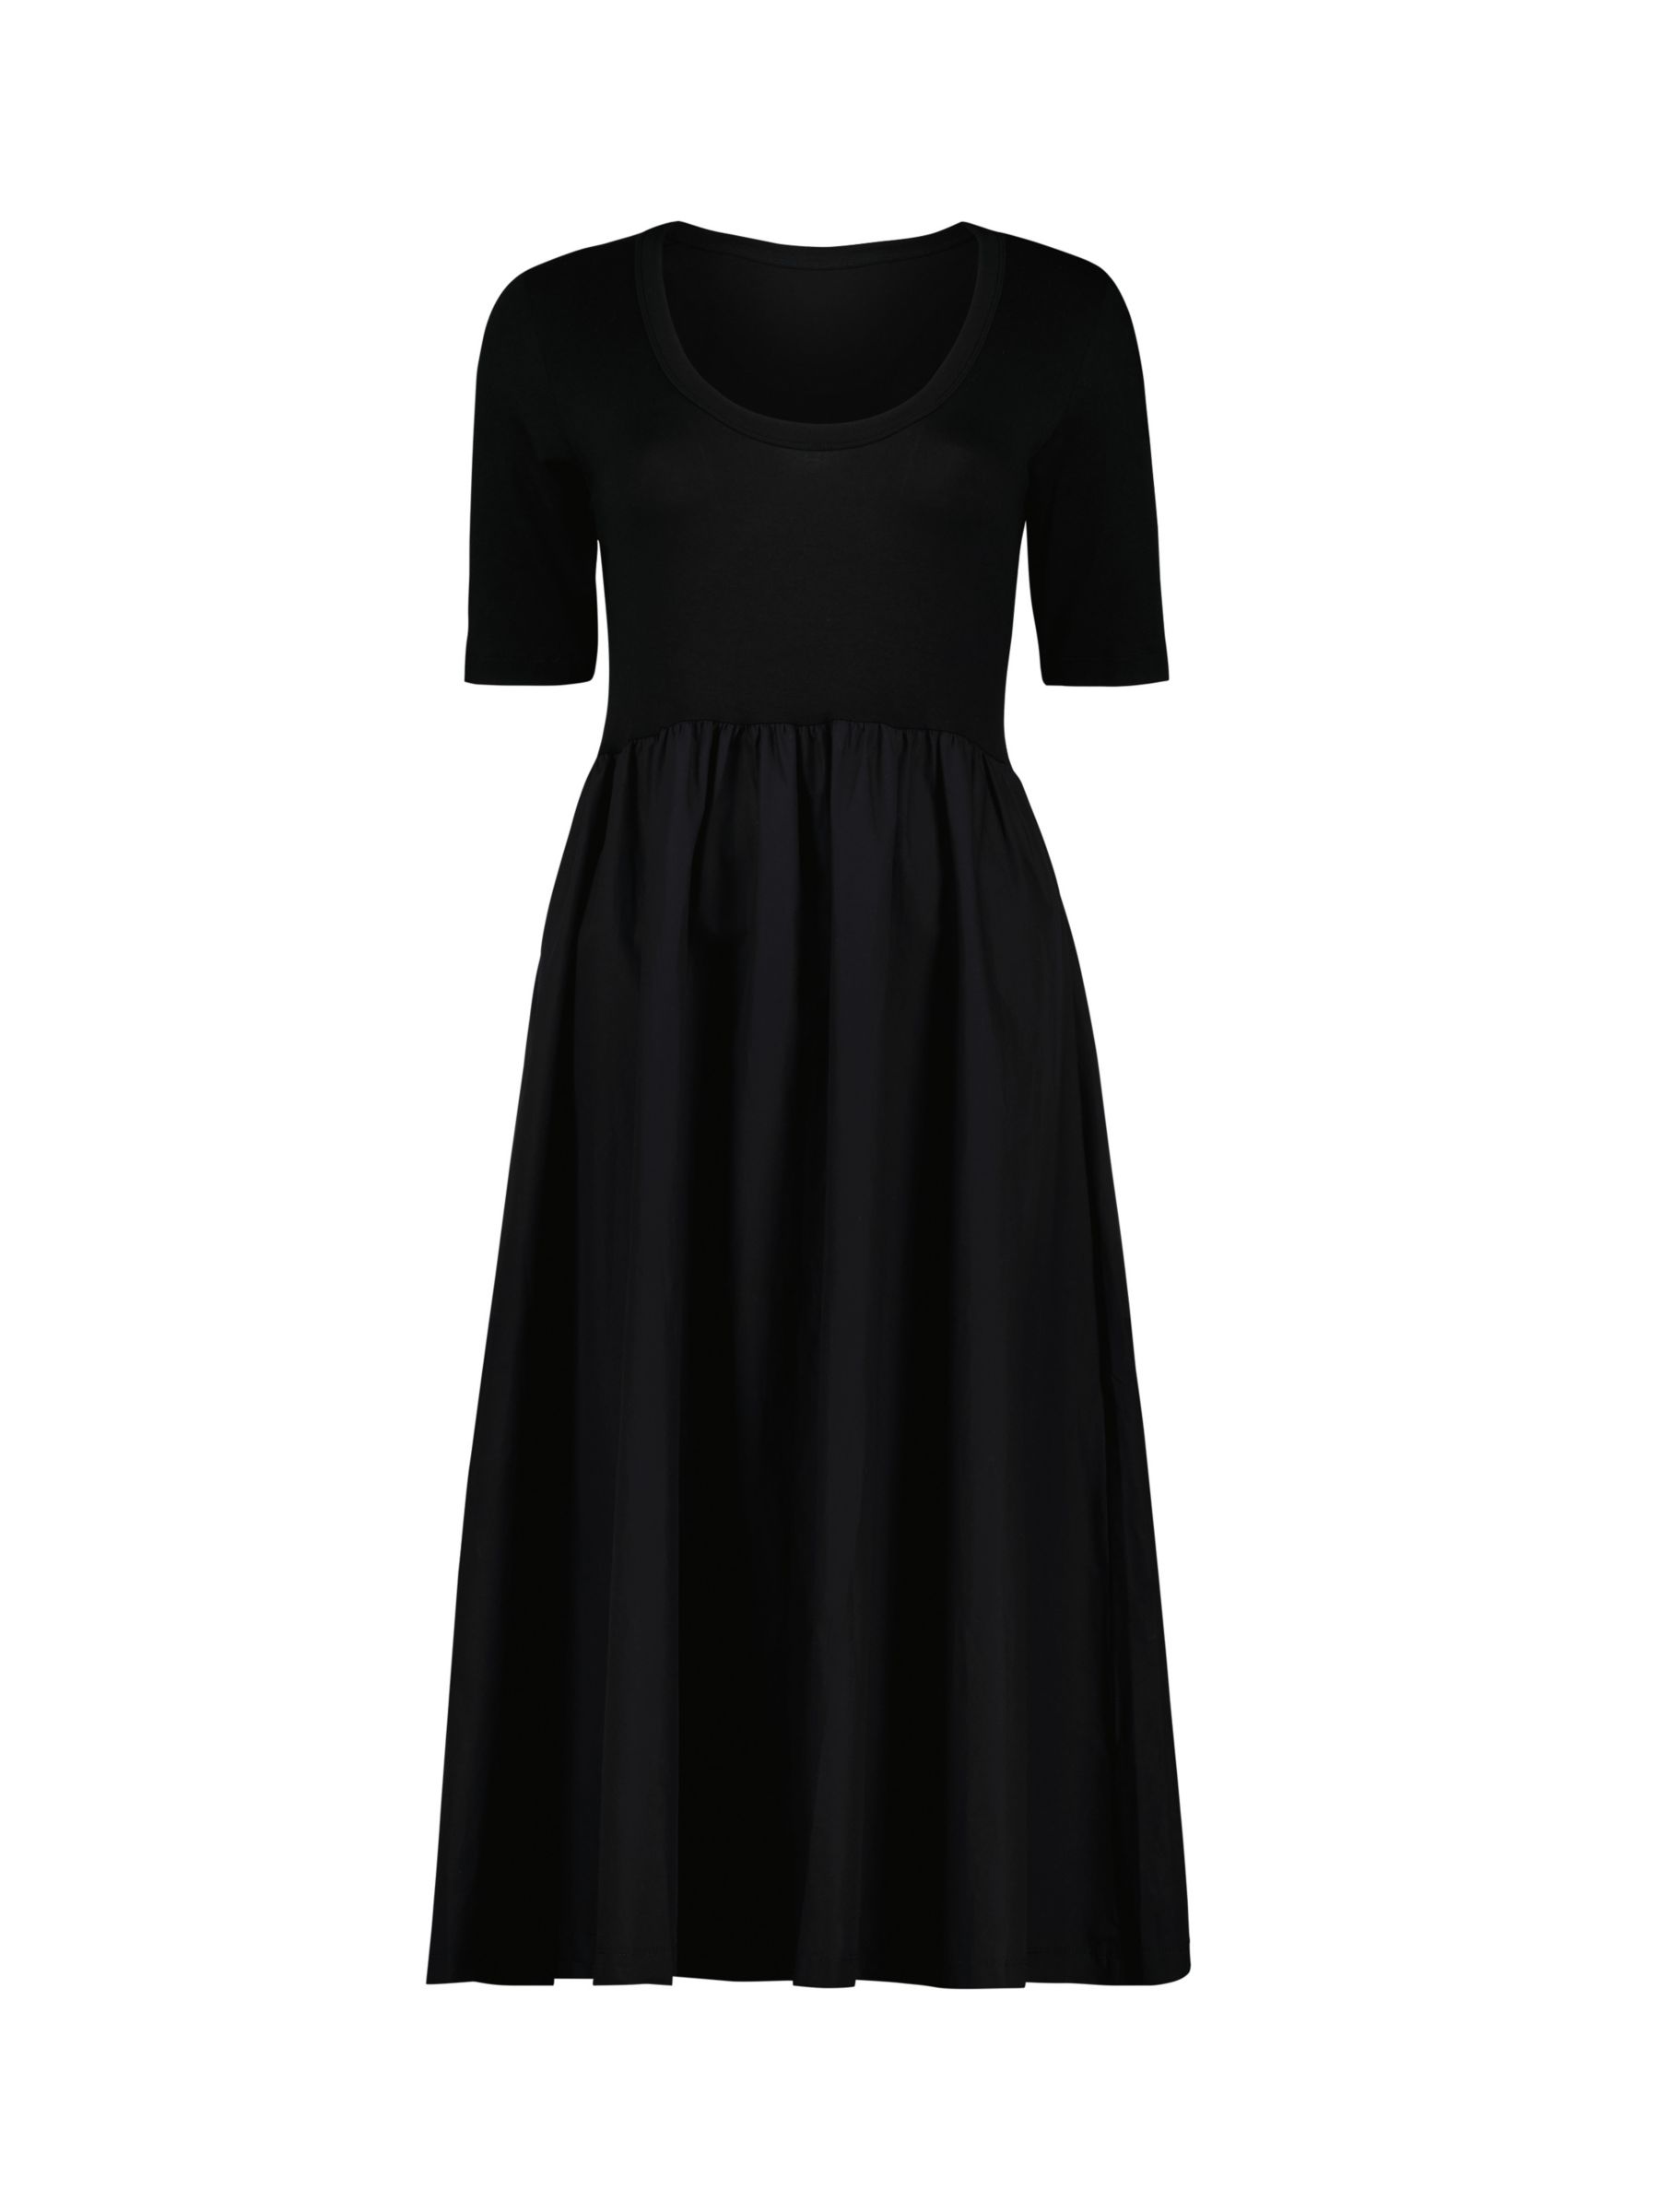 Buy Baukjen Paula Mixed Material Dress, Caviar Black Online at johnlewis.com